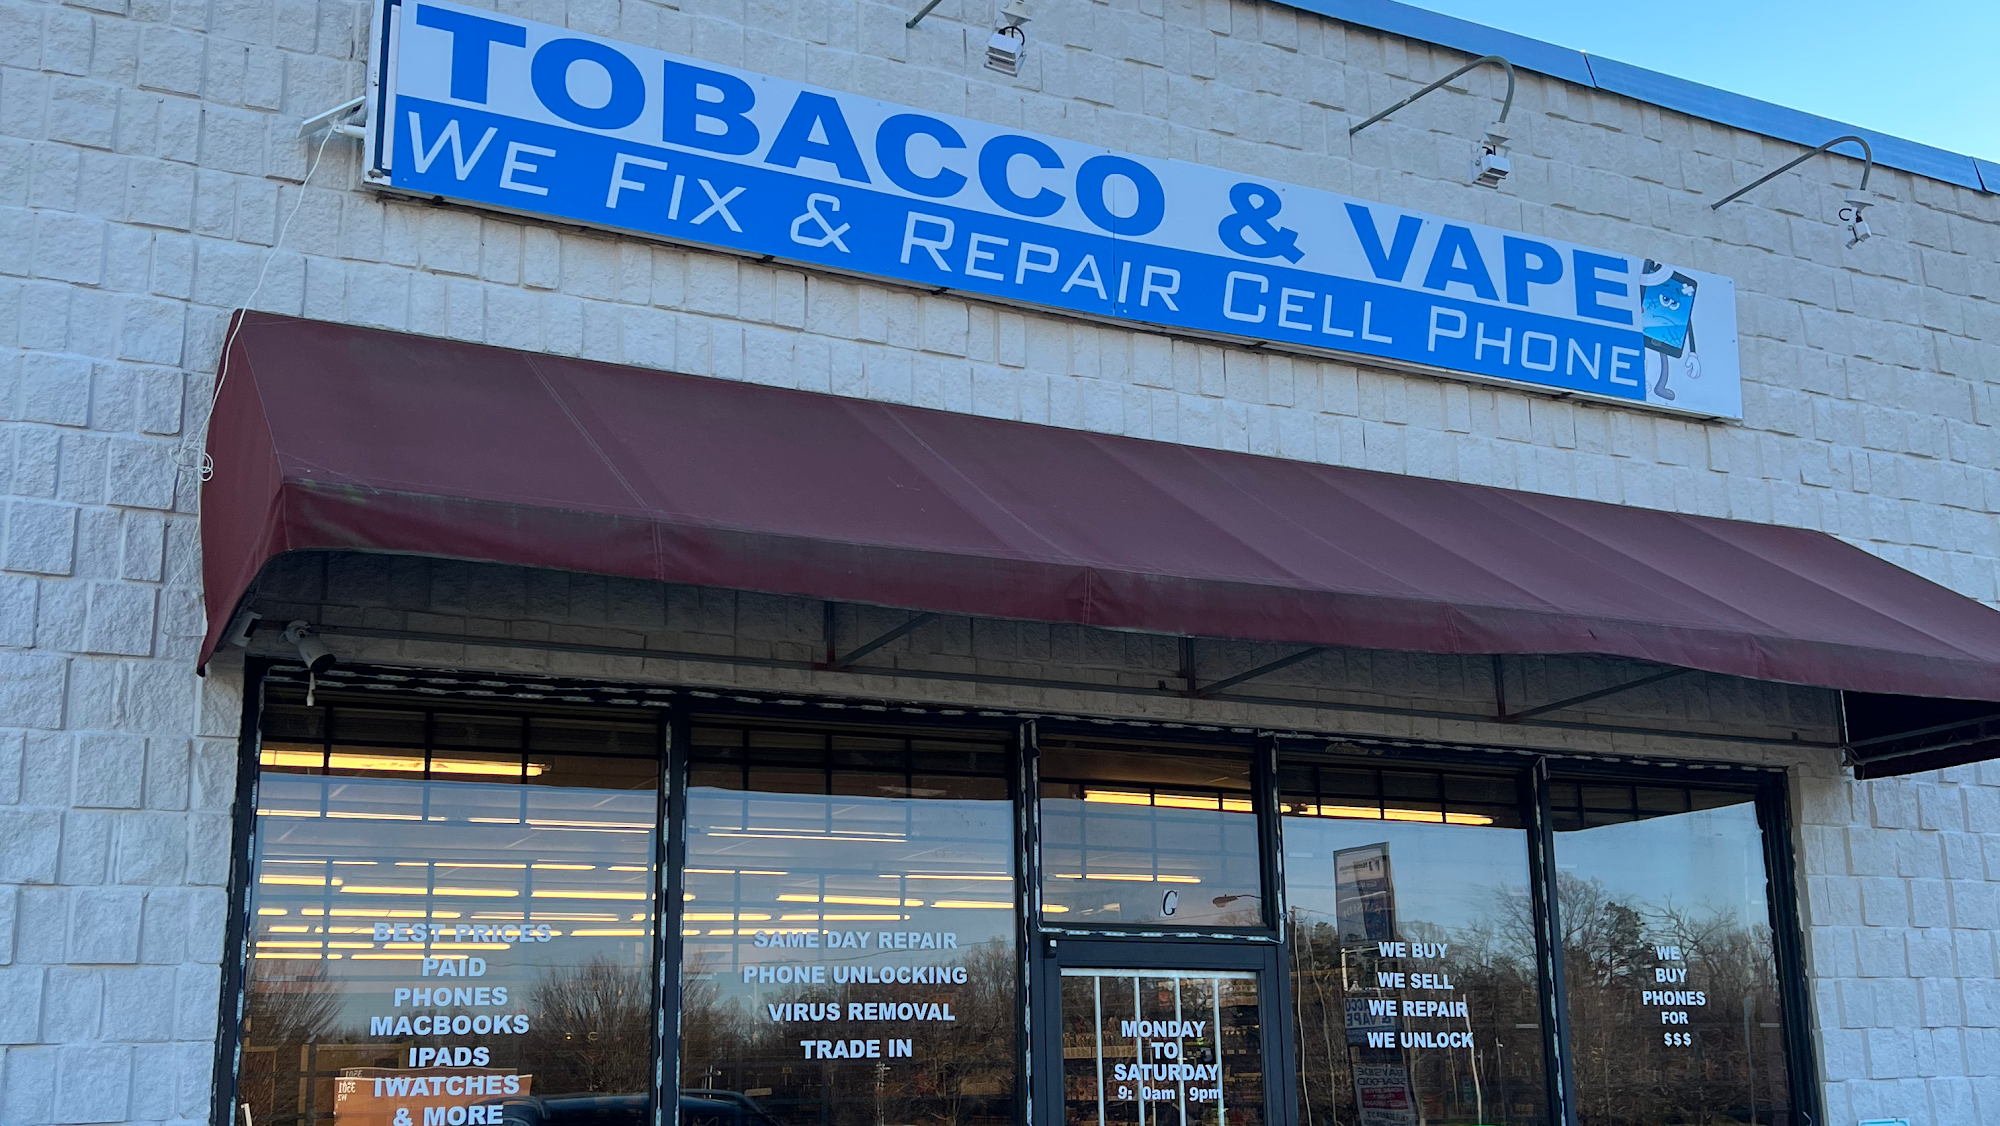 Genio tobacco & vape & phone repairs